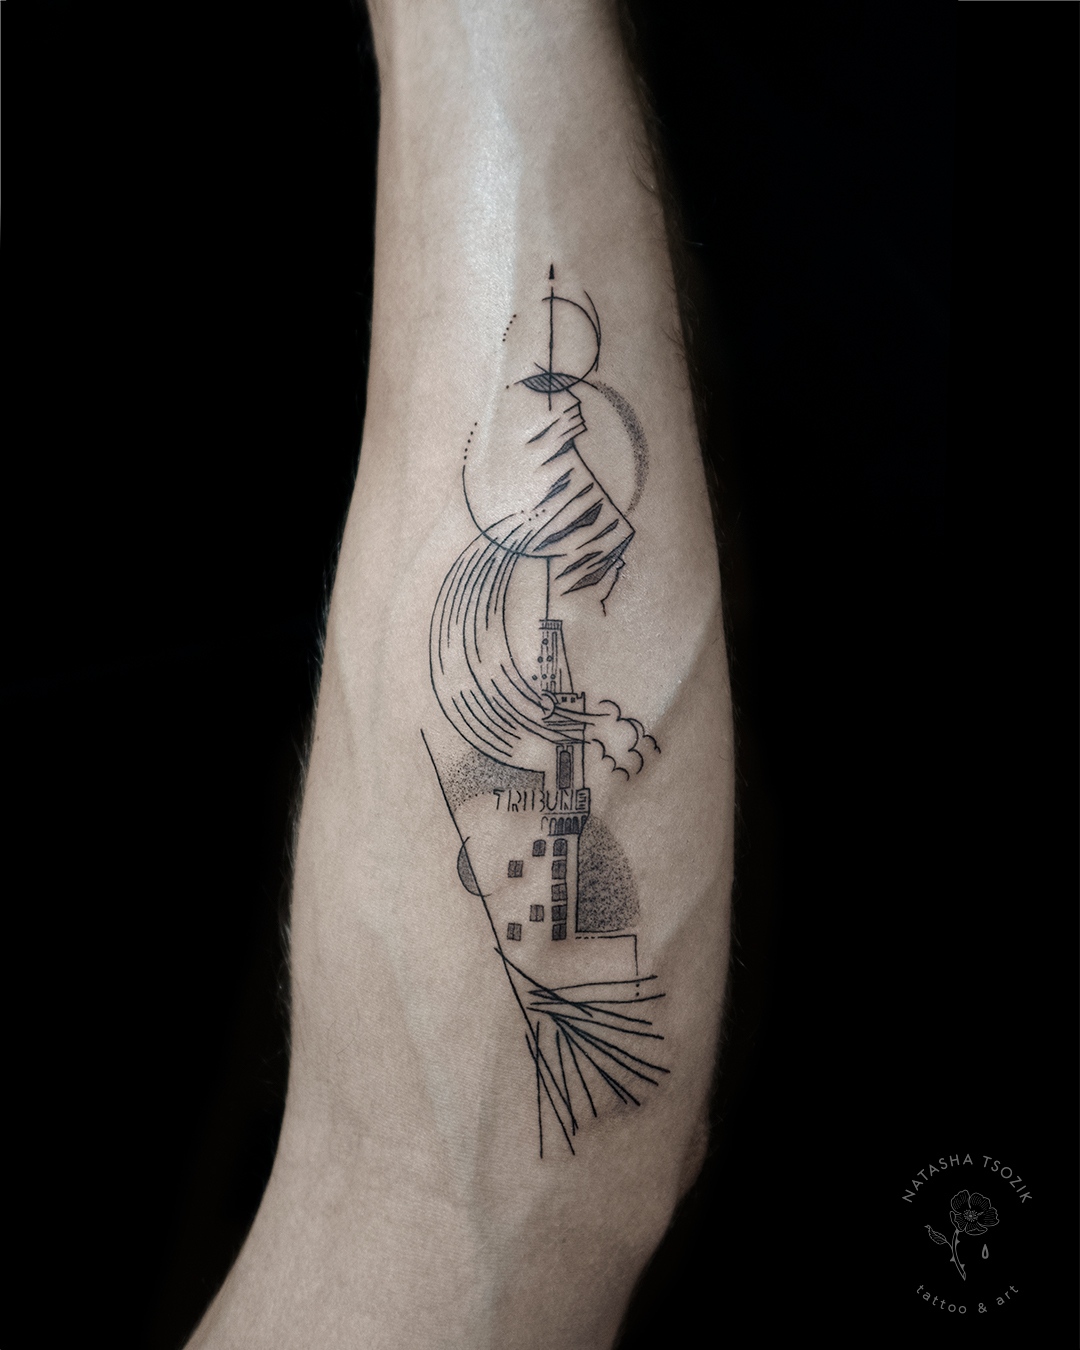 forearm line tattoo